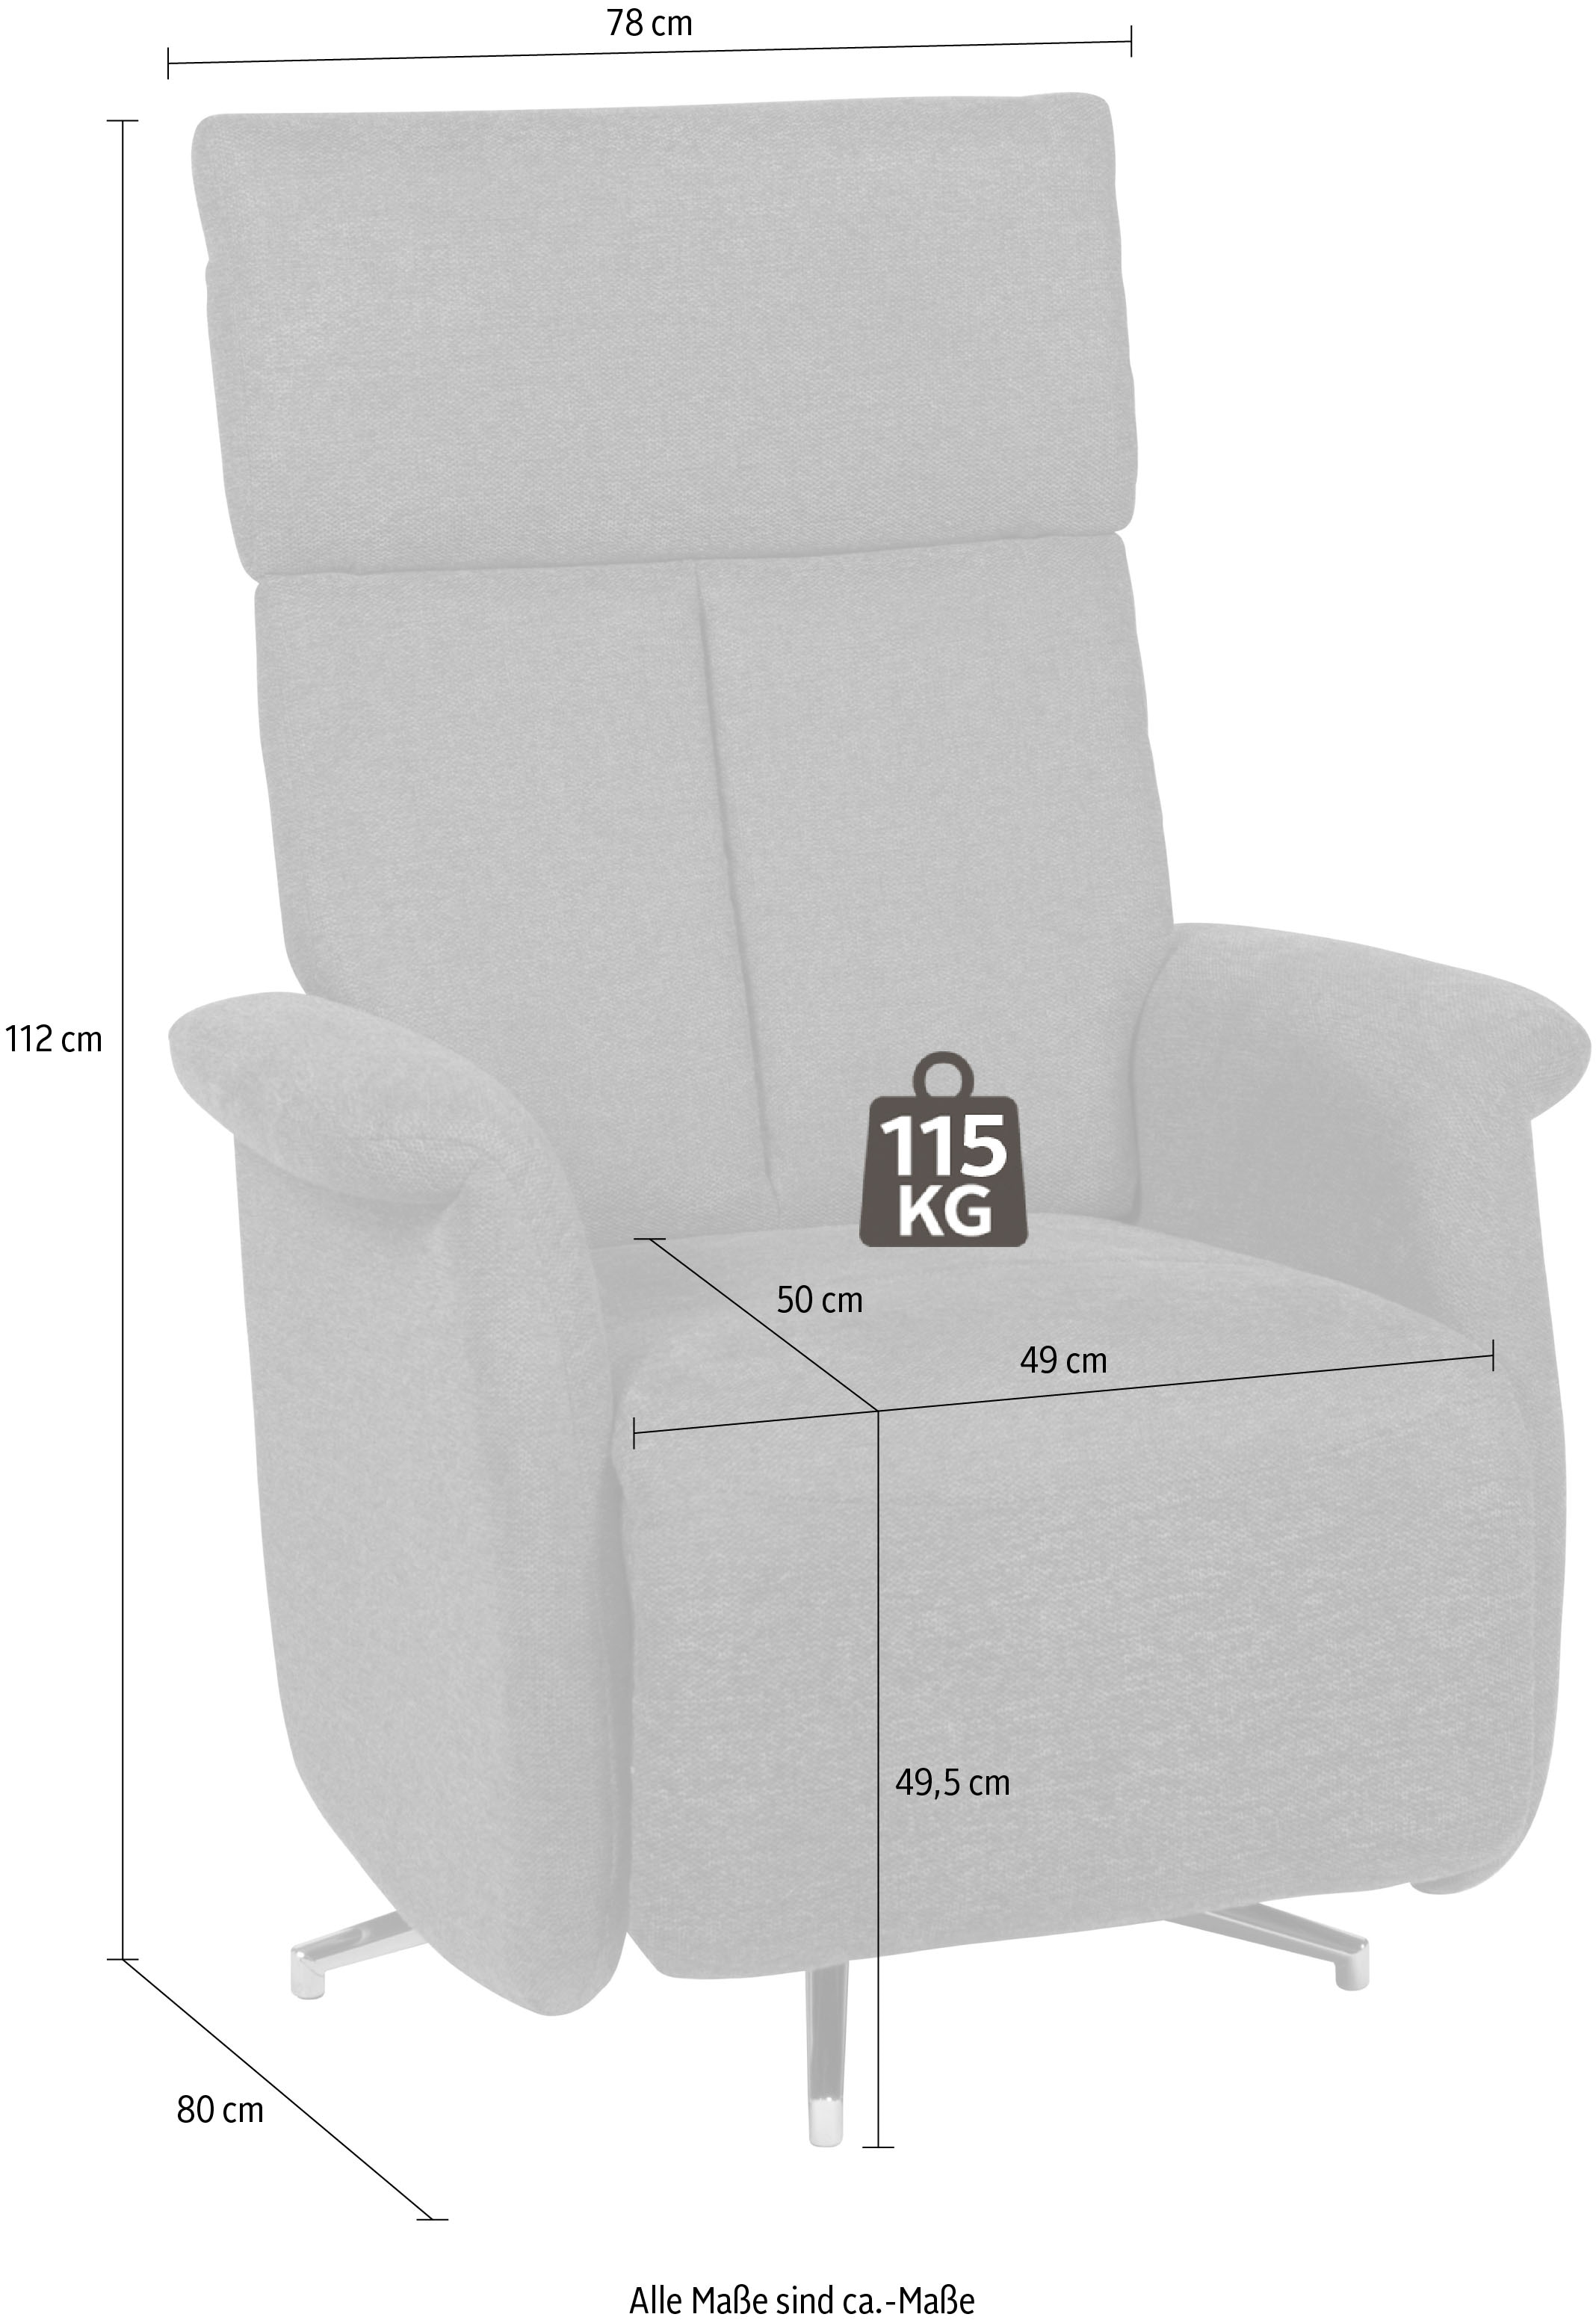 Duo Collection TV-Sessel »Thompson mit stufenloser Einstellung der Rückenlehne, Relaxfunktion«, und Taschenfederkern mit Stahlwellenunterfederung, 360 Grad drehbar